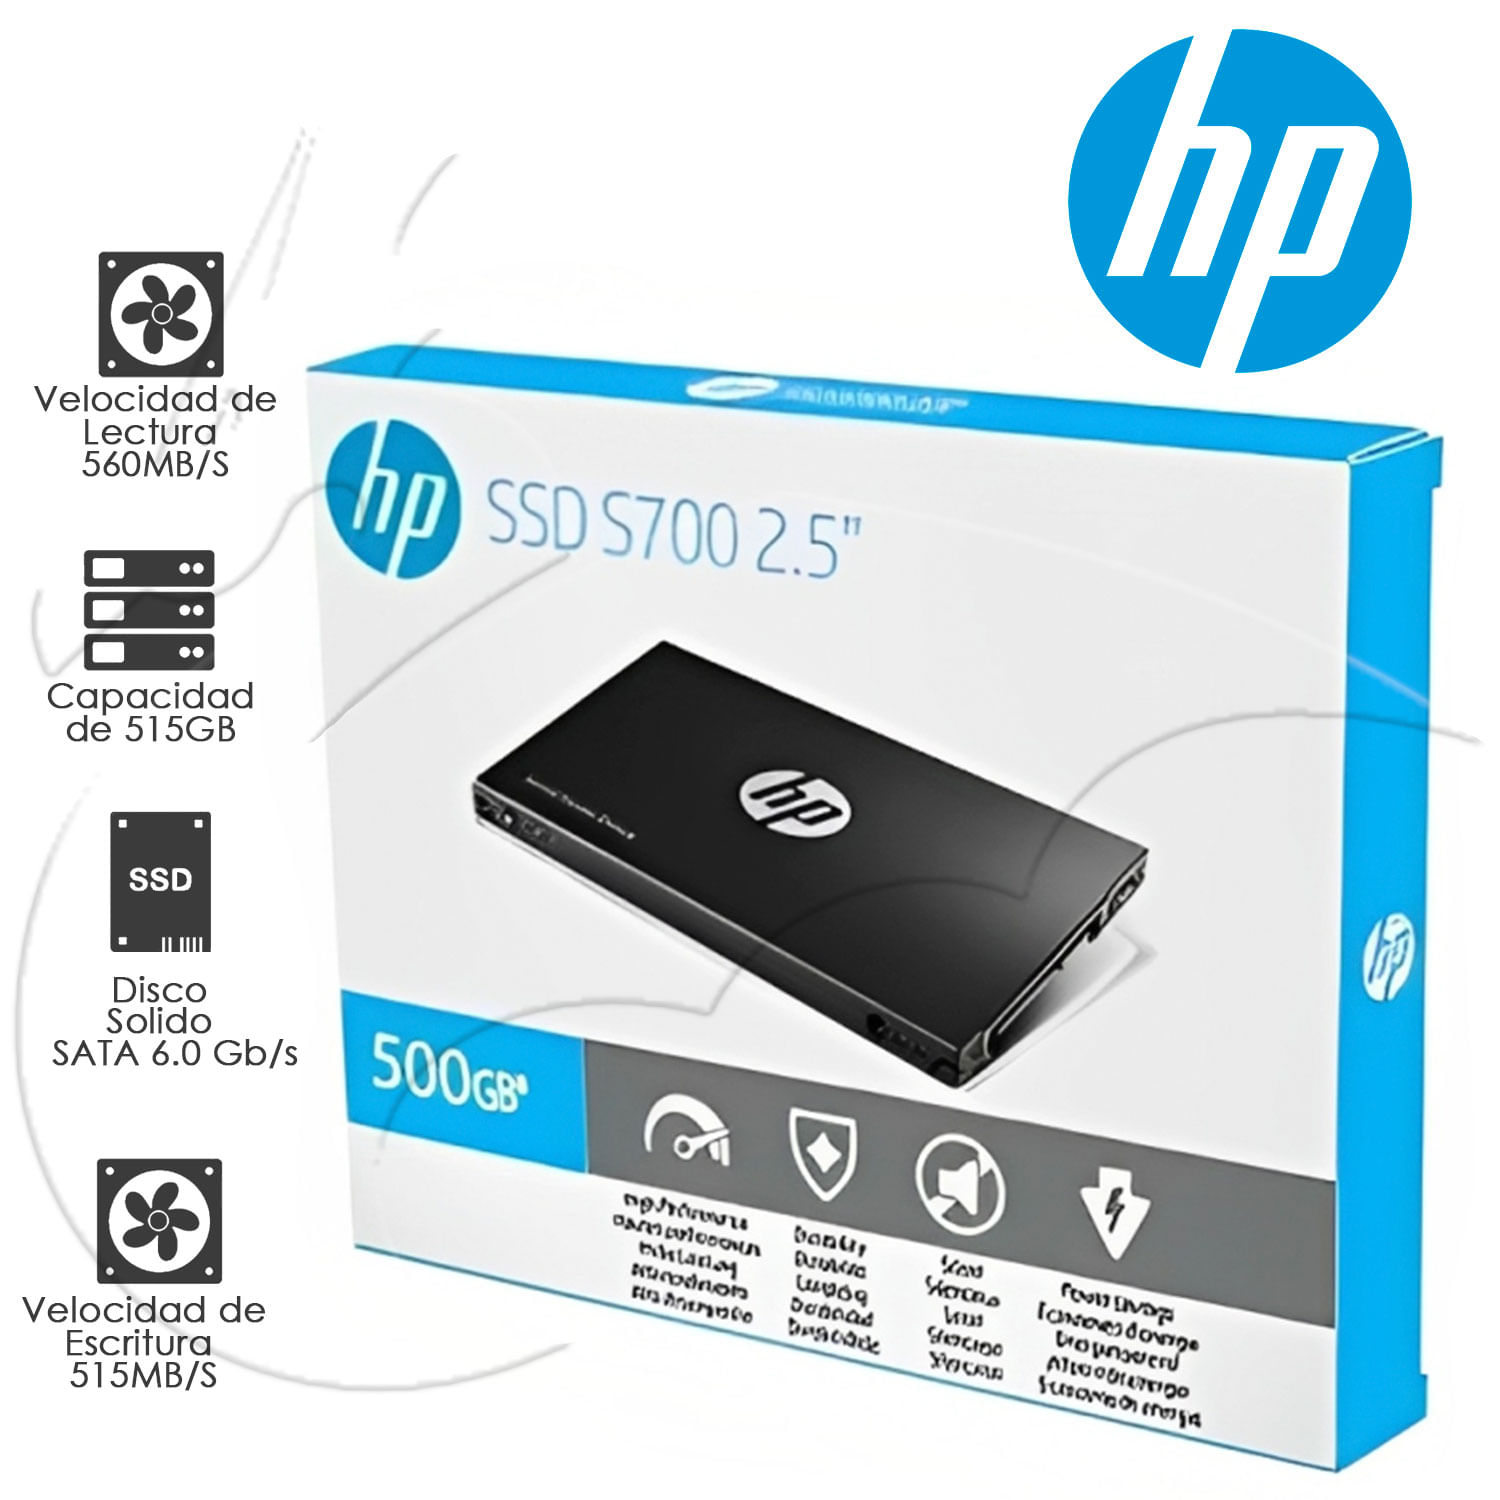 SSD HP S700, 500GB, SATA 6.0 GB/S, 2.5", 7MM.